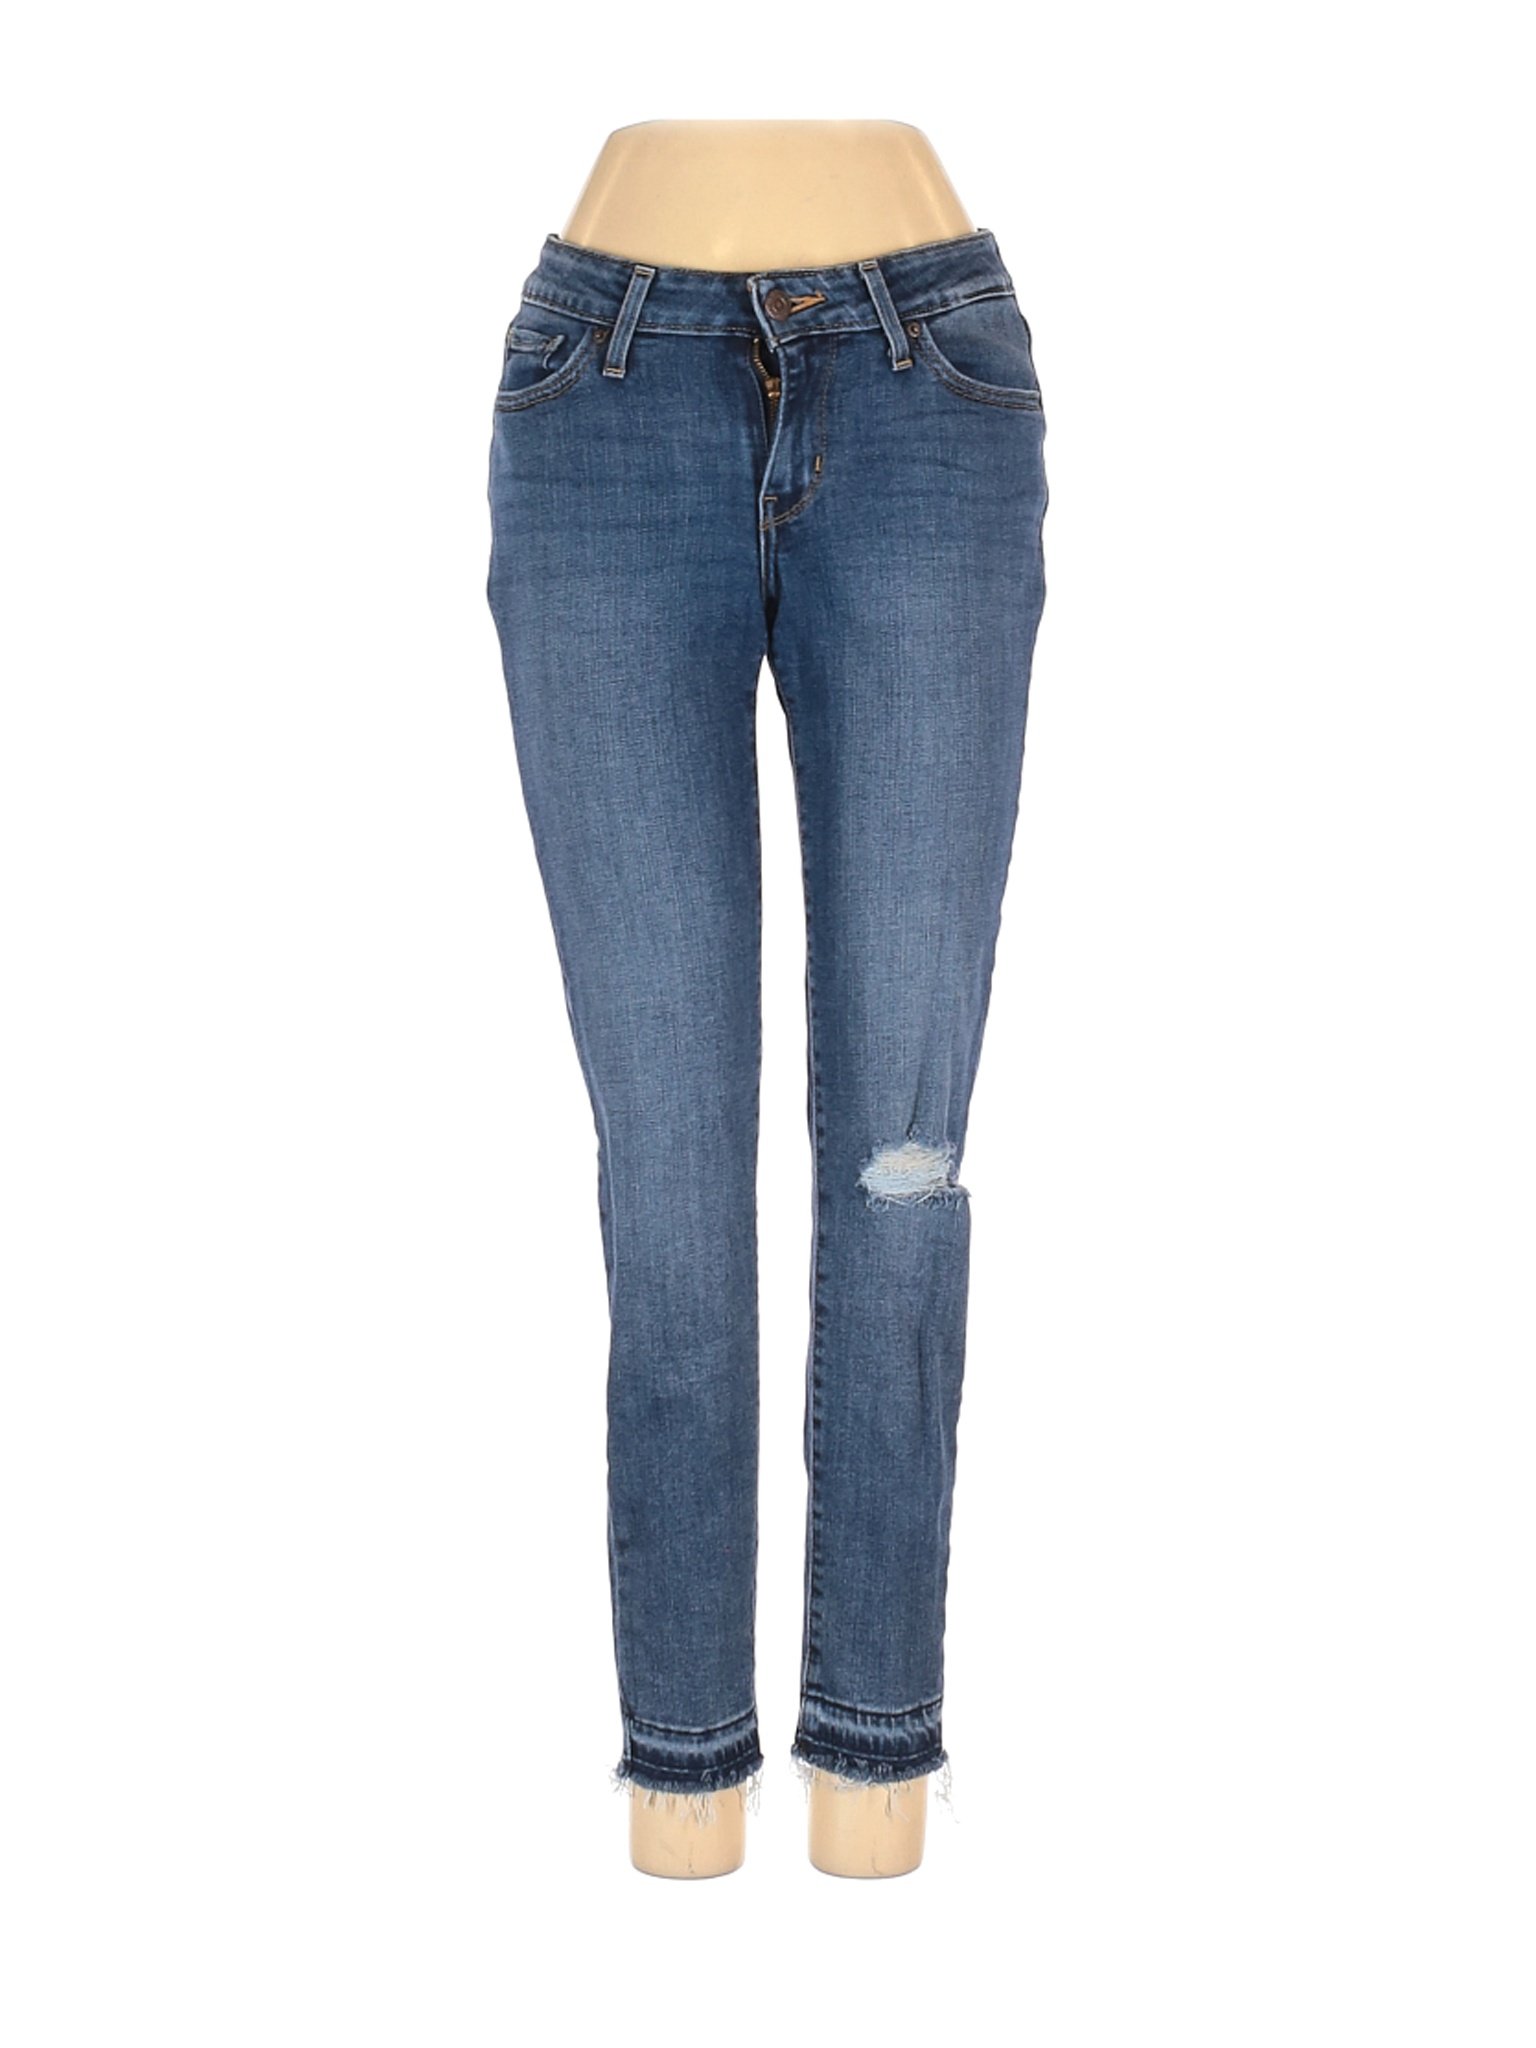 Levi's Women Blue Jeans 25W | eBay